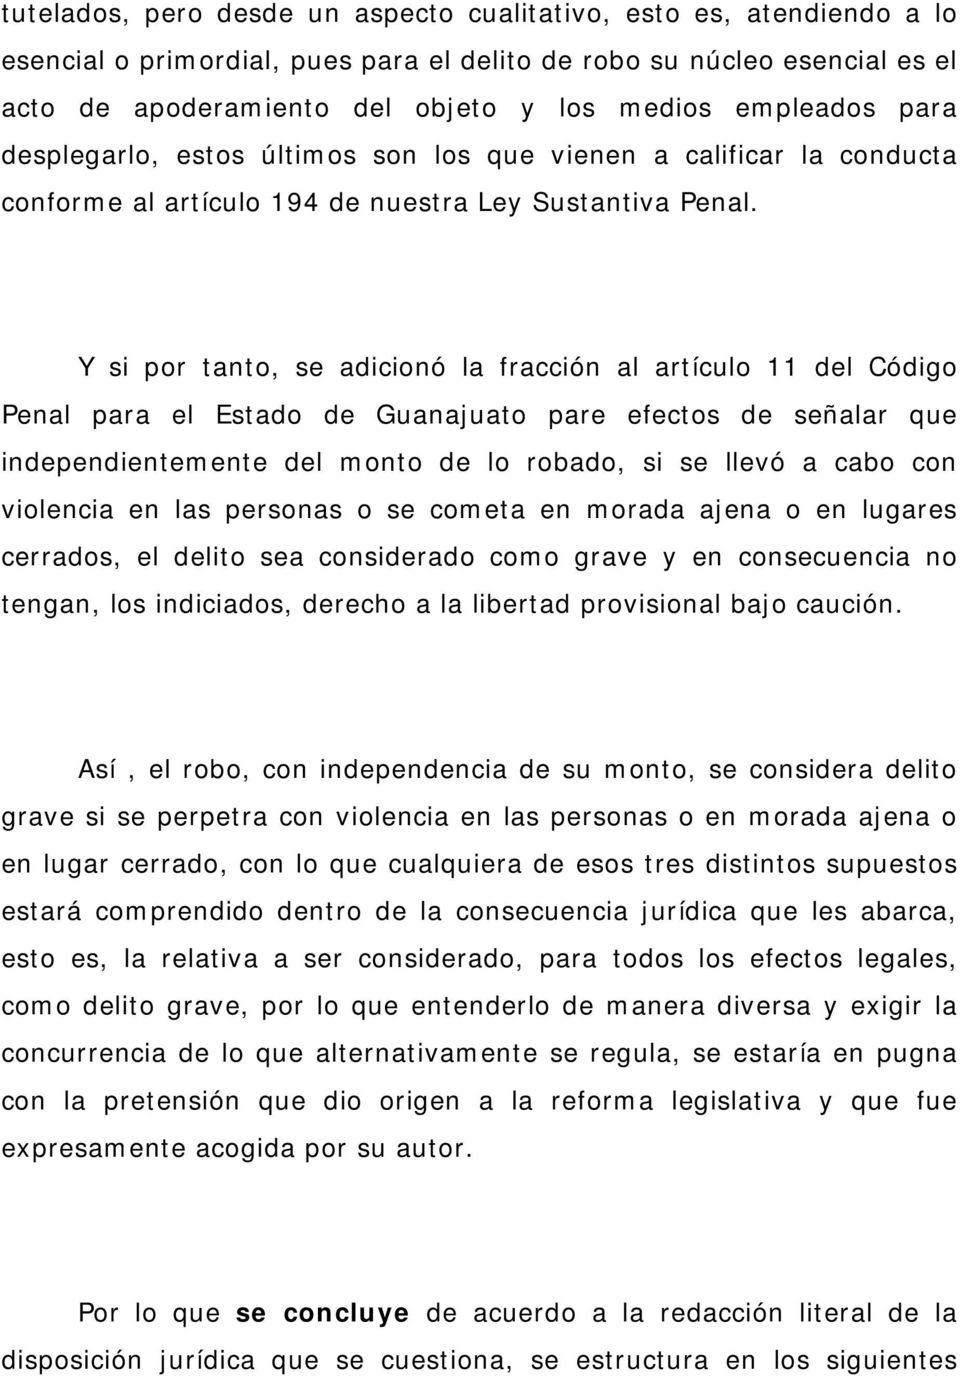 Y si por tanto, se adicionó la fracción al artículo 11 del Código Penal para el Estado de Guanajuato pare efectos de señalar que independientemente del monto de lo robado, si se llevó a cabo con